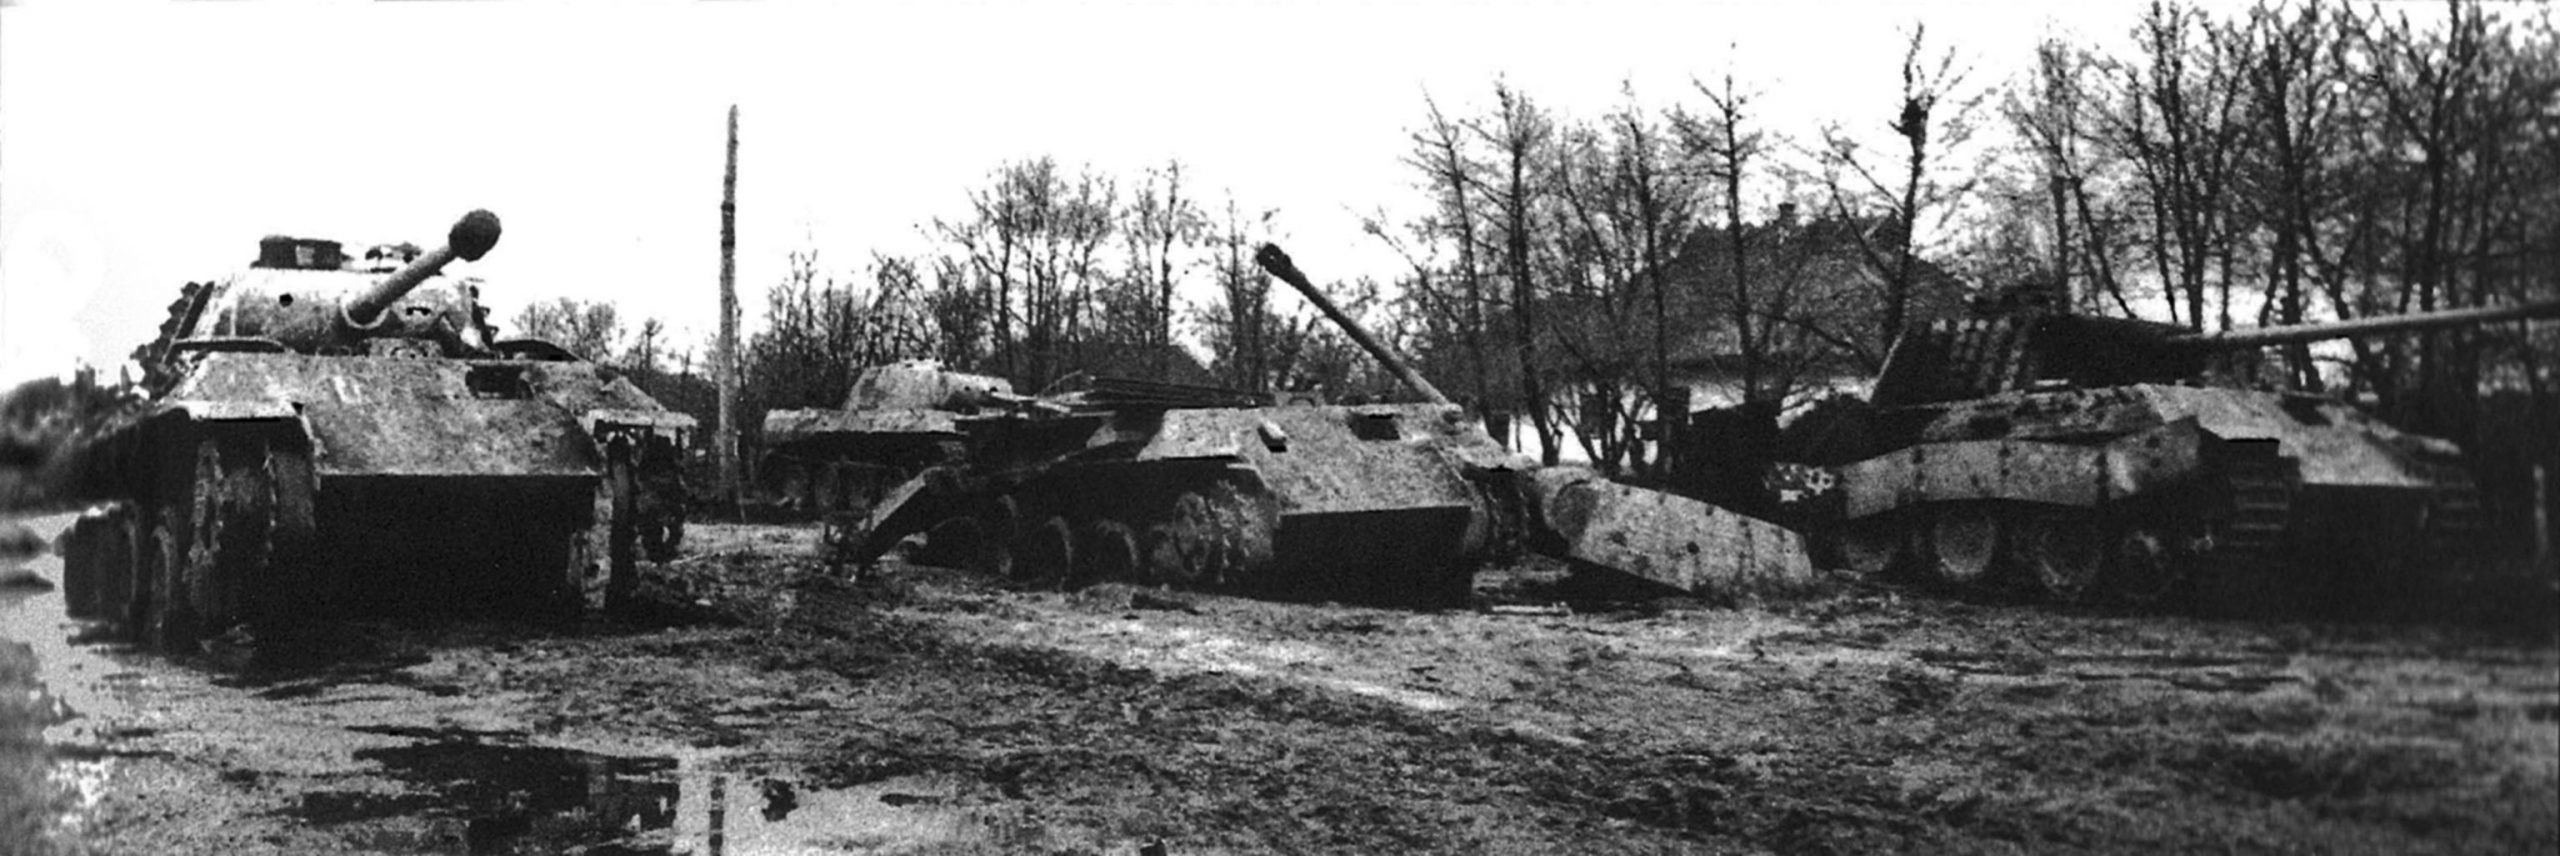 German Panther tanks